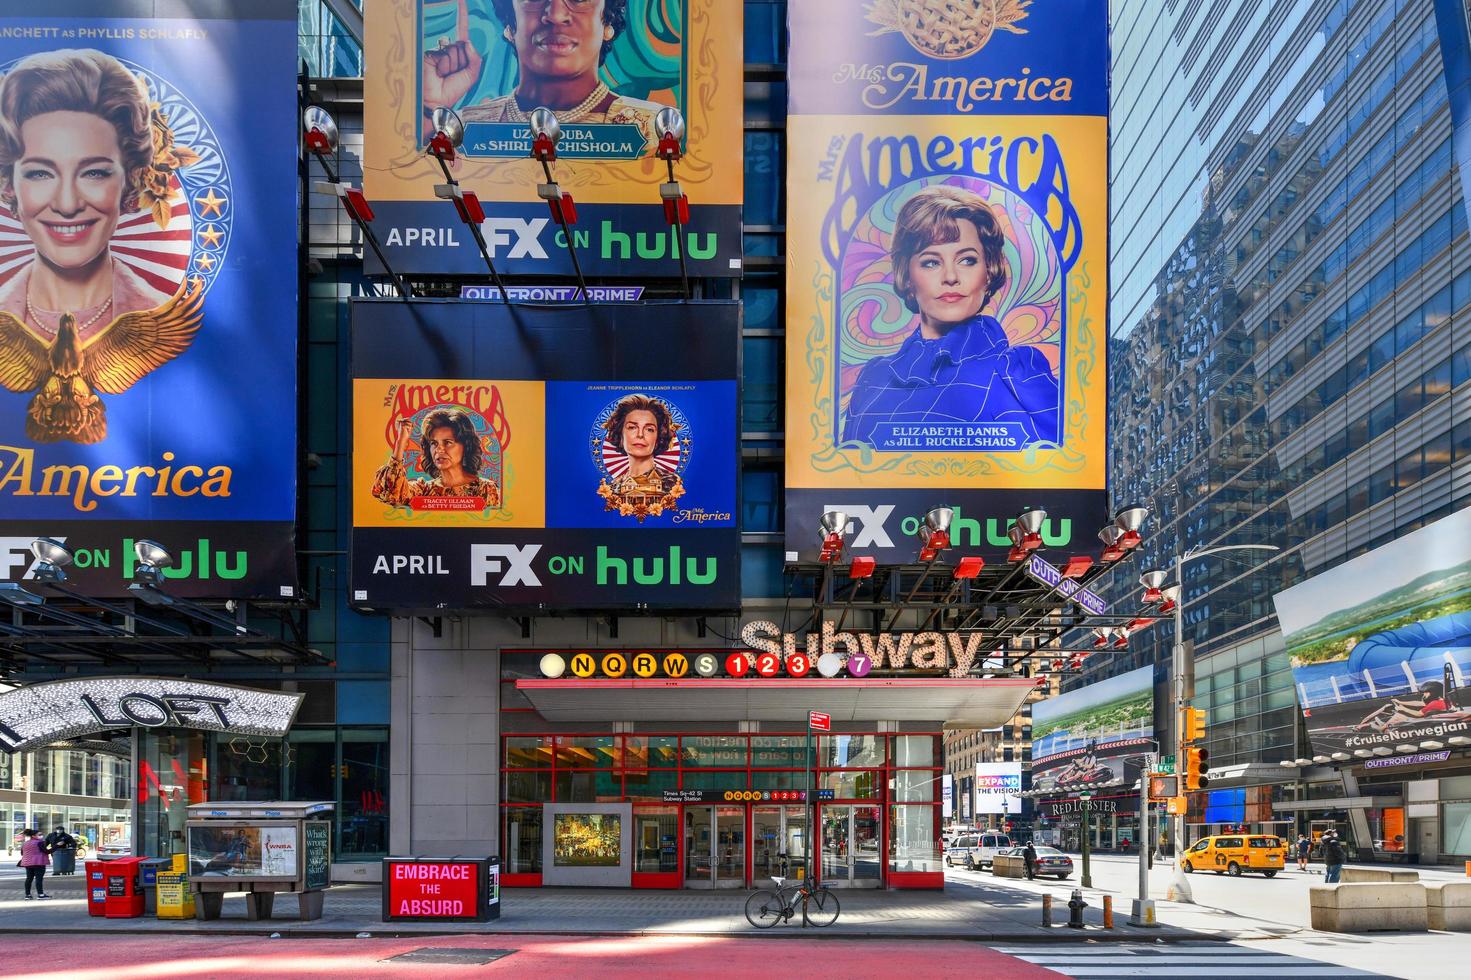 new york, ny - 19. april 2020 - time square u-bahnstation in new york. Die U-Bahn-Station Times Square befindet sich in der 42. Straße und achten Avenue in Midtown Manhattan. foto